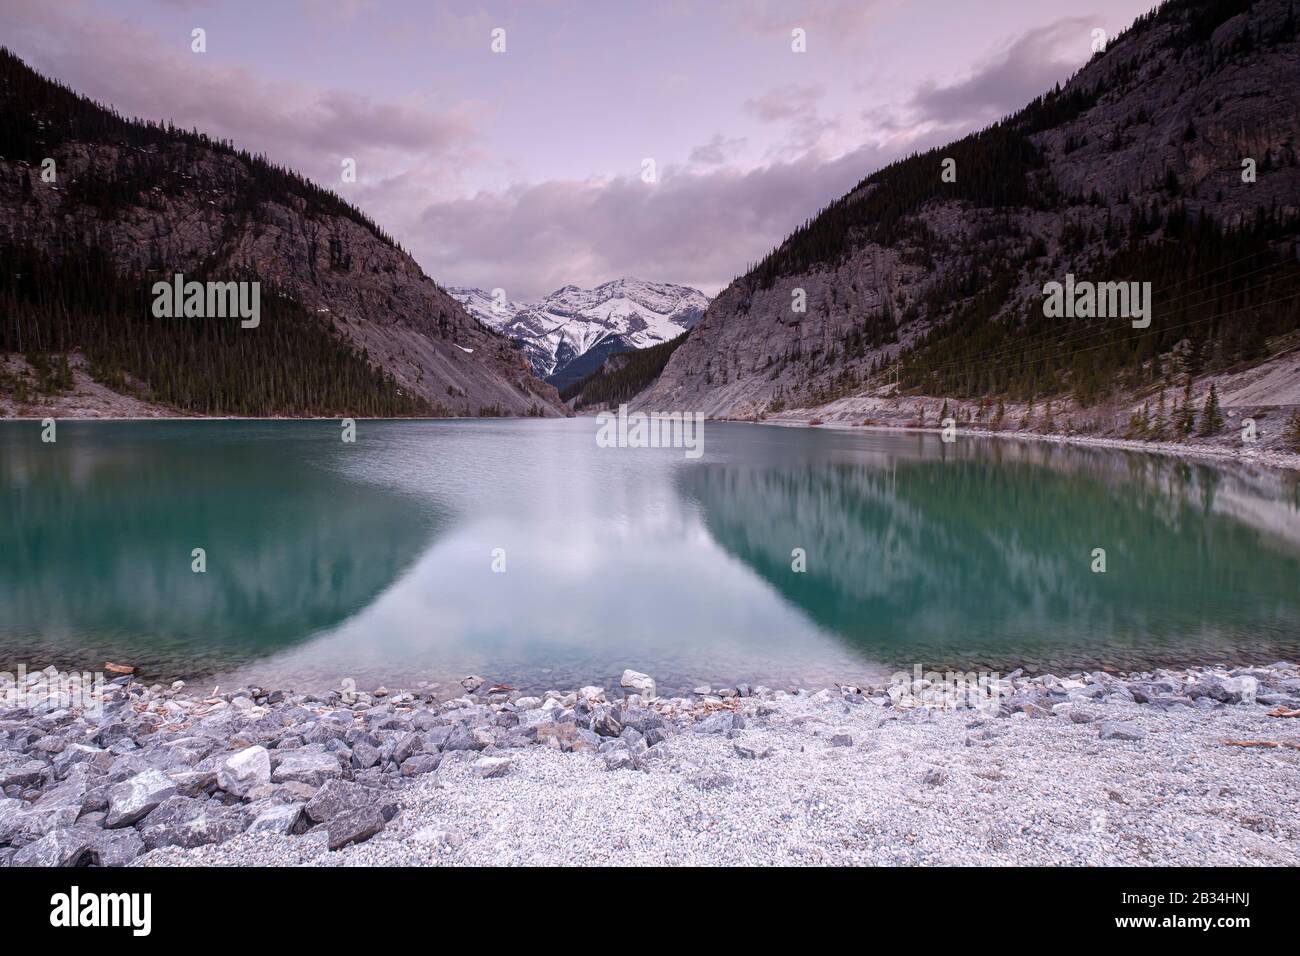 Lac coloré avec forêt printanière et réflexions dans les Rocheuses canadiennes. Lacs Grassi près de Canmore dans les montagnes Rocheuses. Alberta. Canada. Banque D'Images